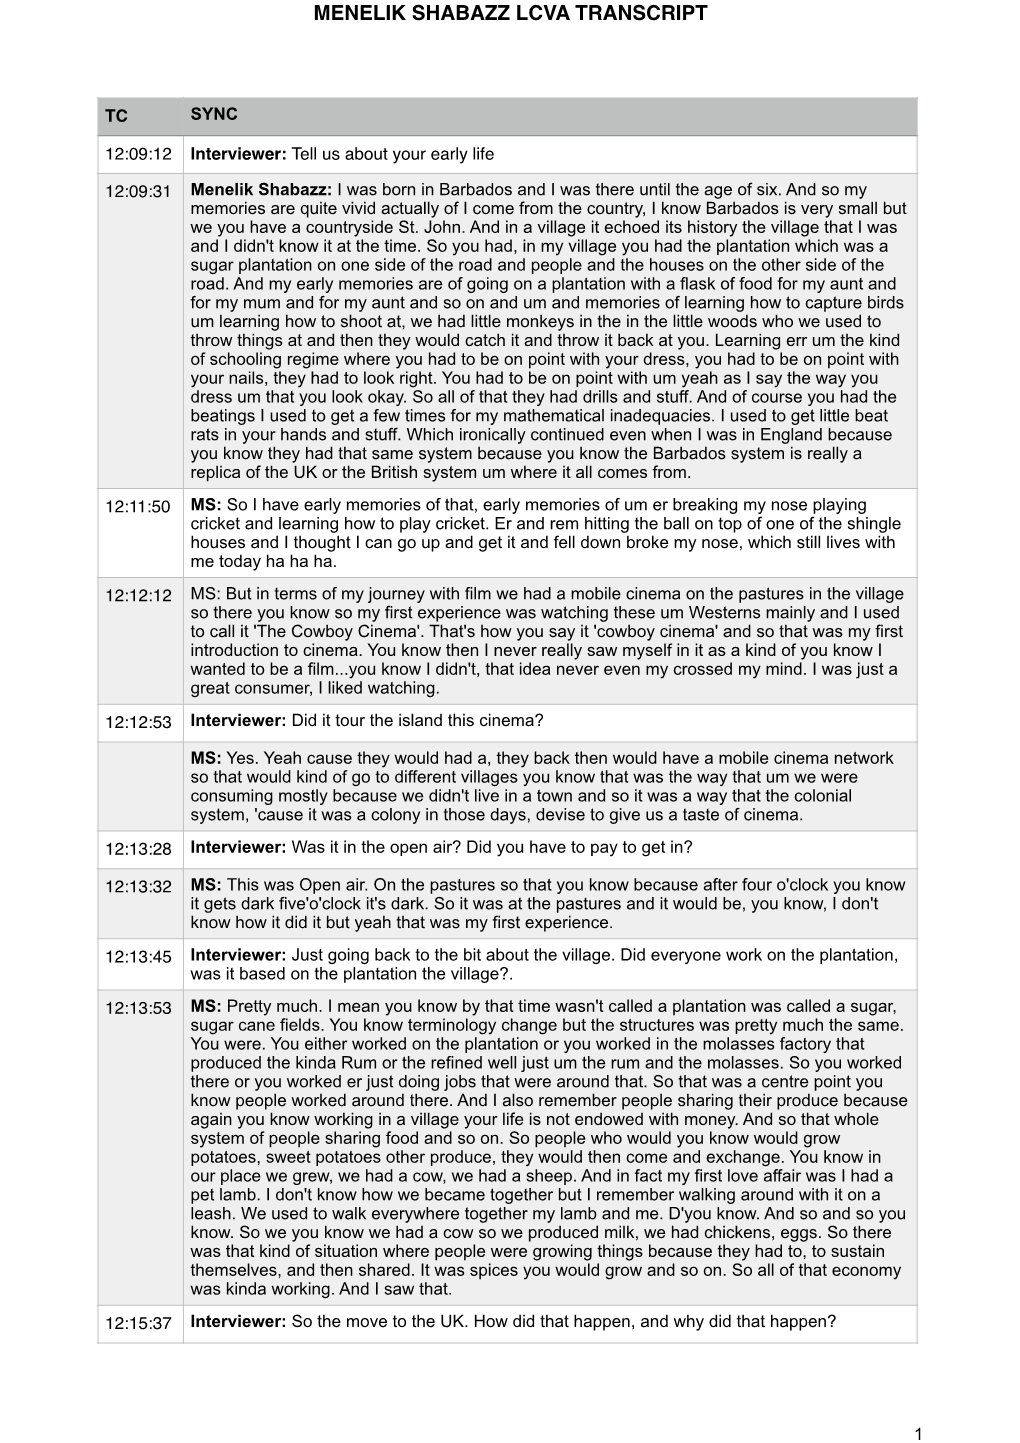 Menelik Shabazz Transcript.Pages